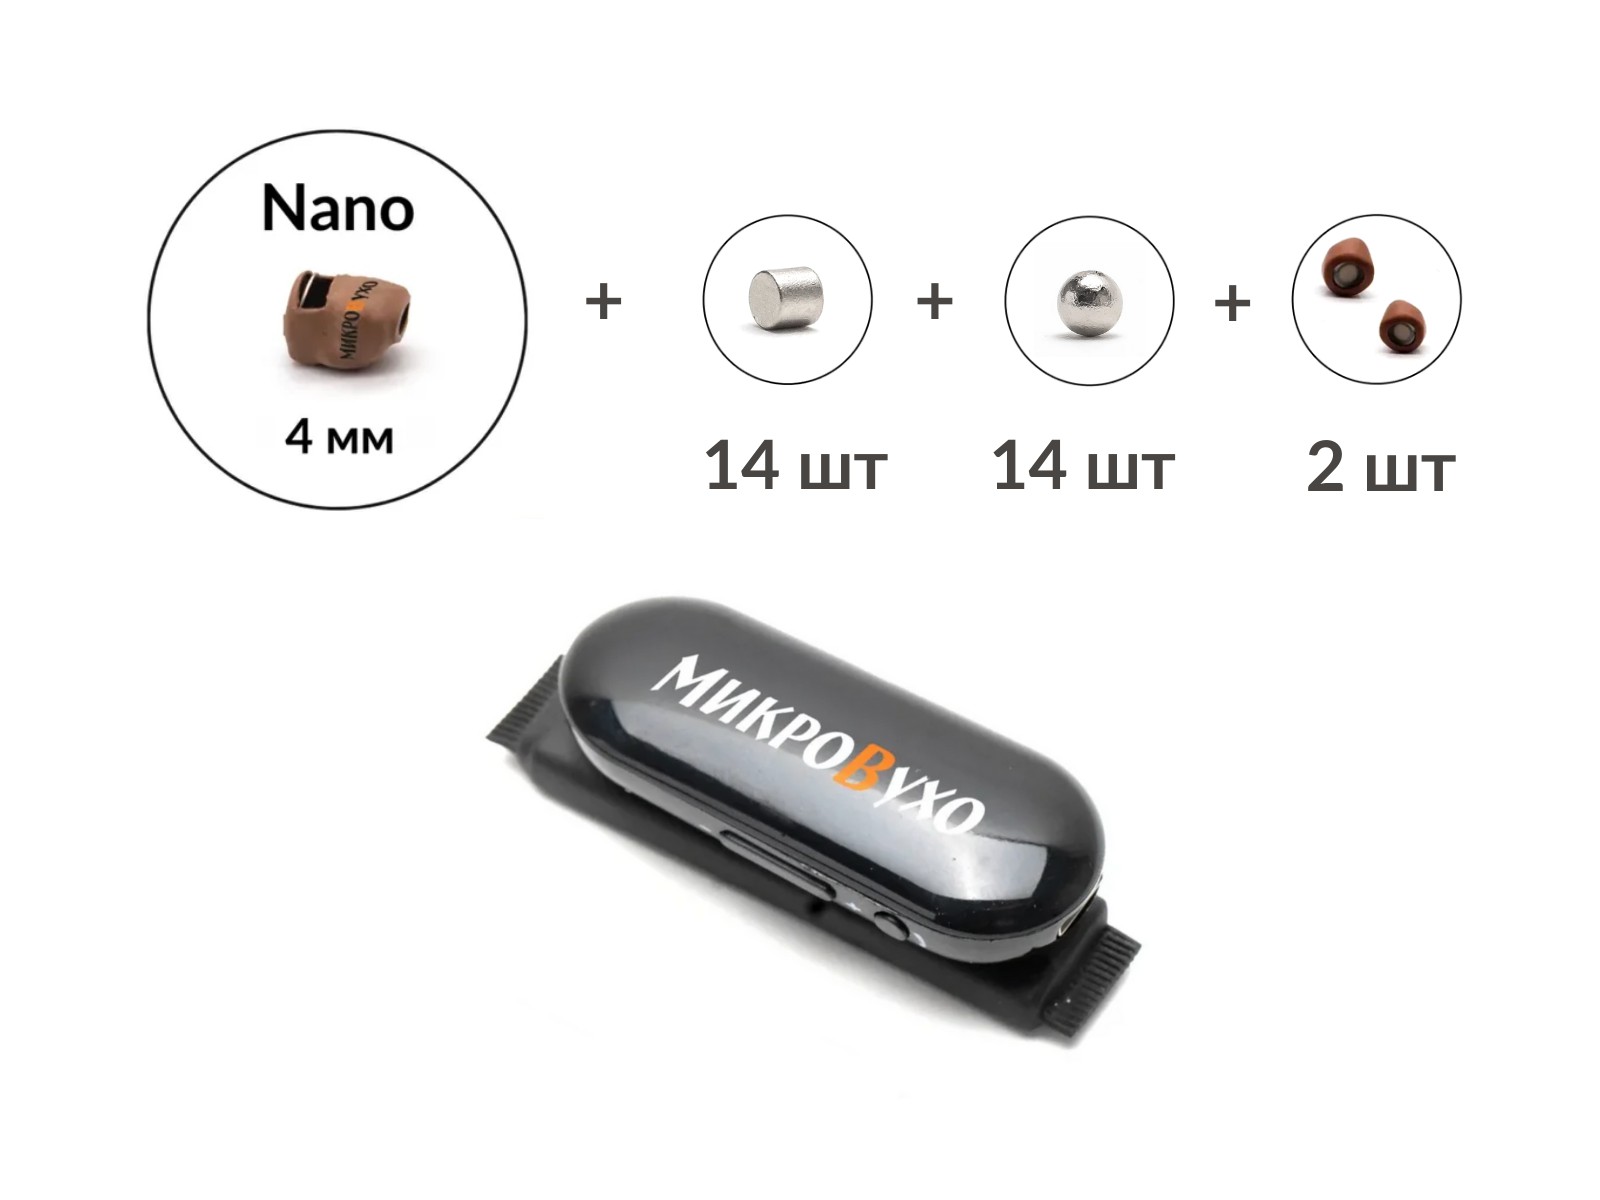 Универсальная гарнитура Bluetooth Box Pro Plus c капсулой Nano 4 мм и магнитами 2 мм - изображение 4